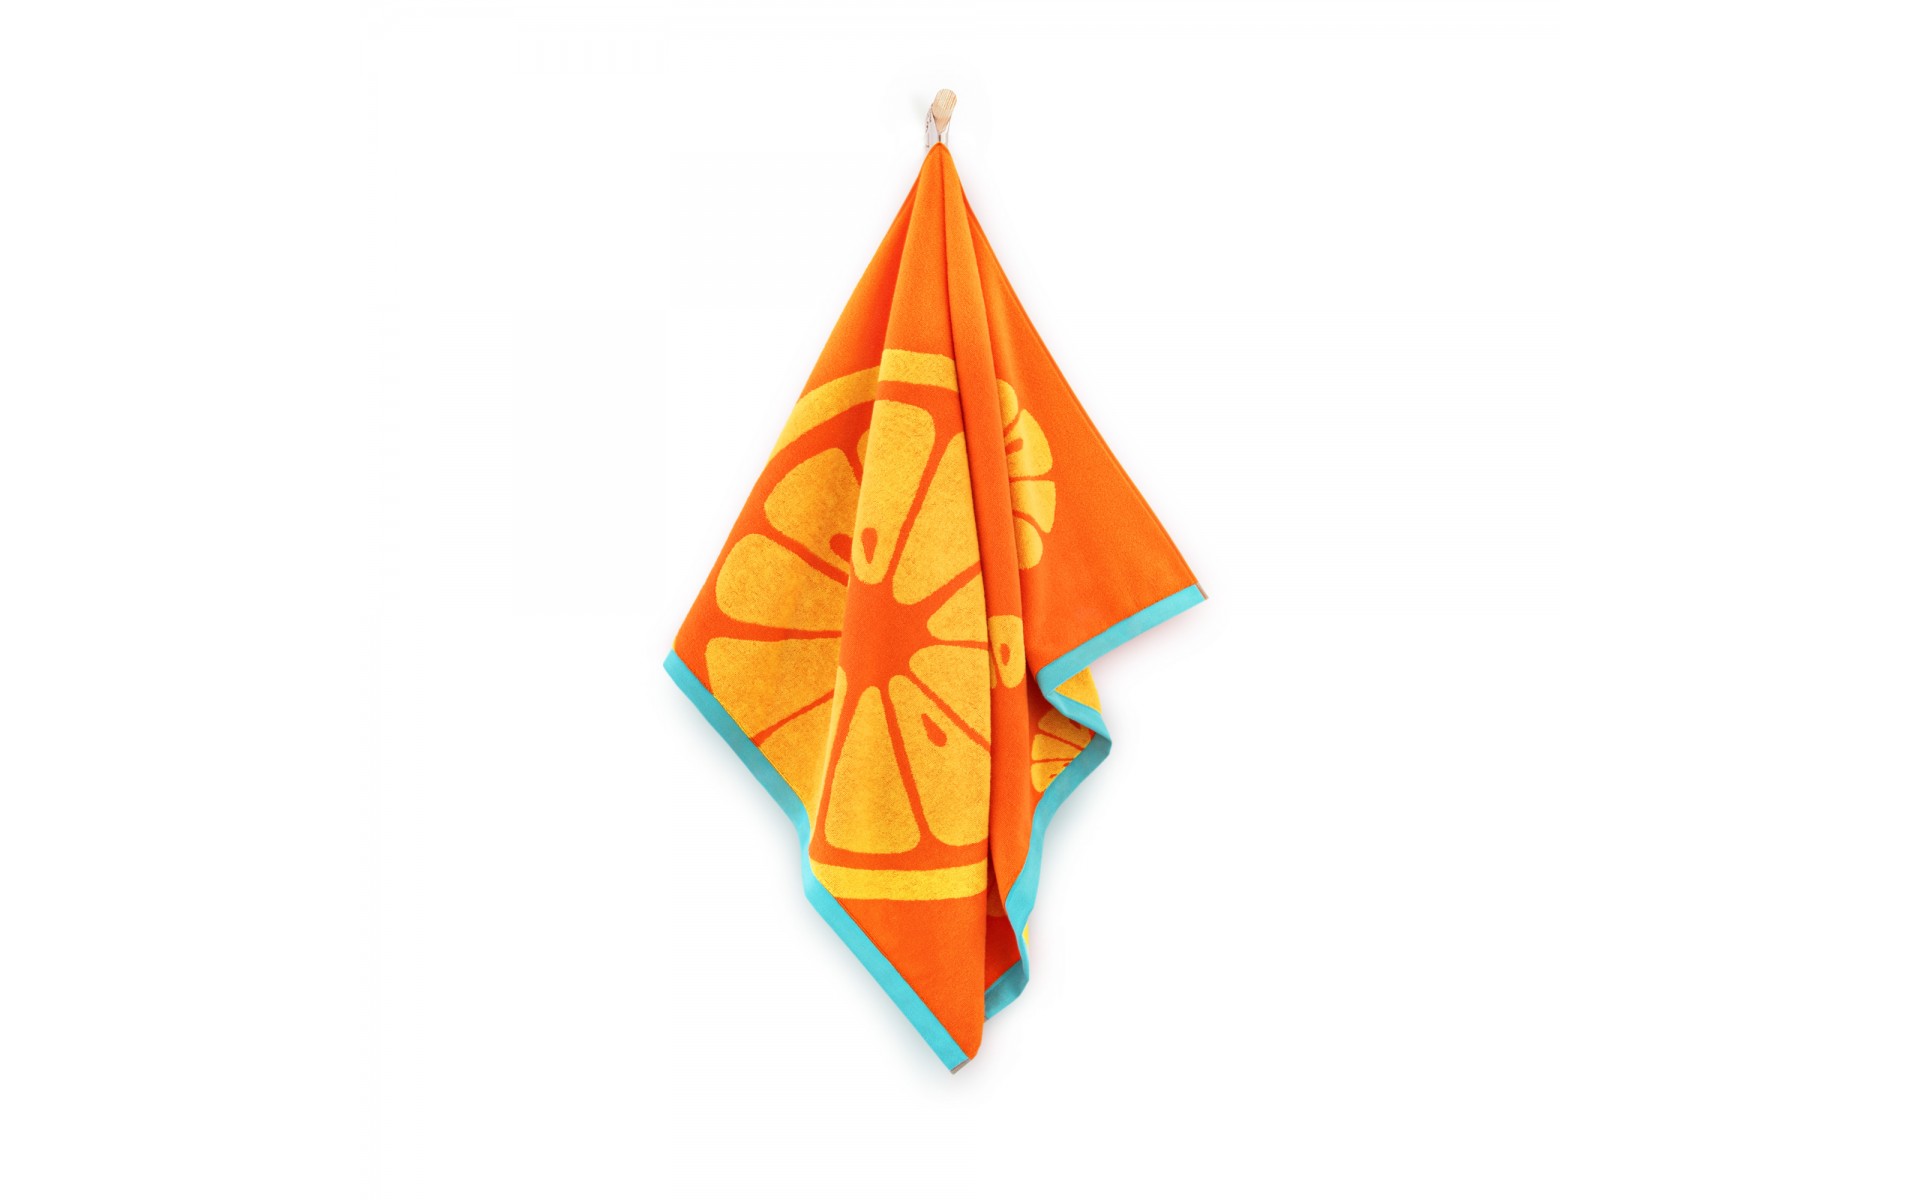 ręcznik ORANGE oranż - 9912